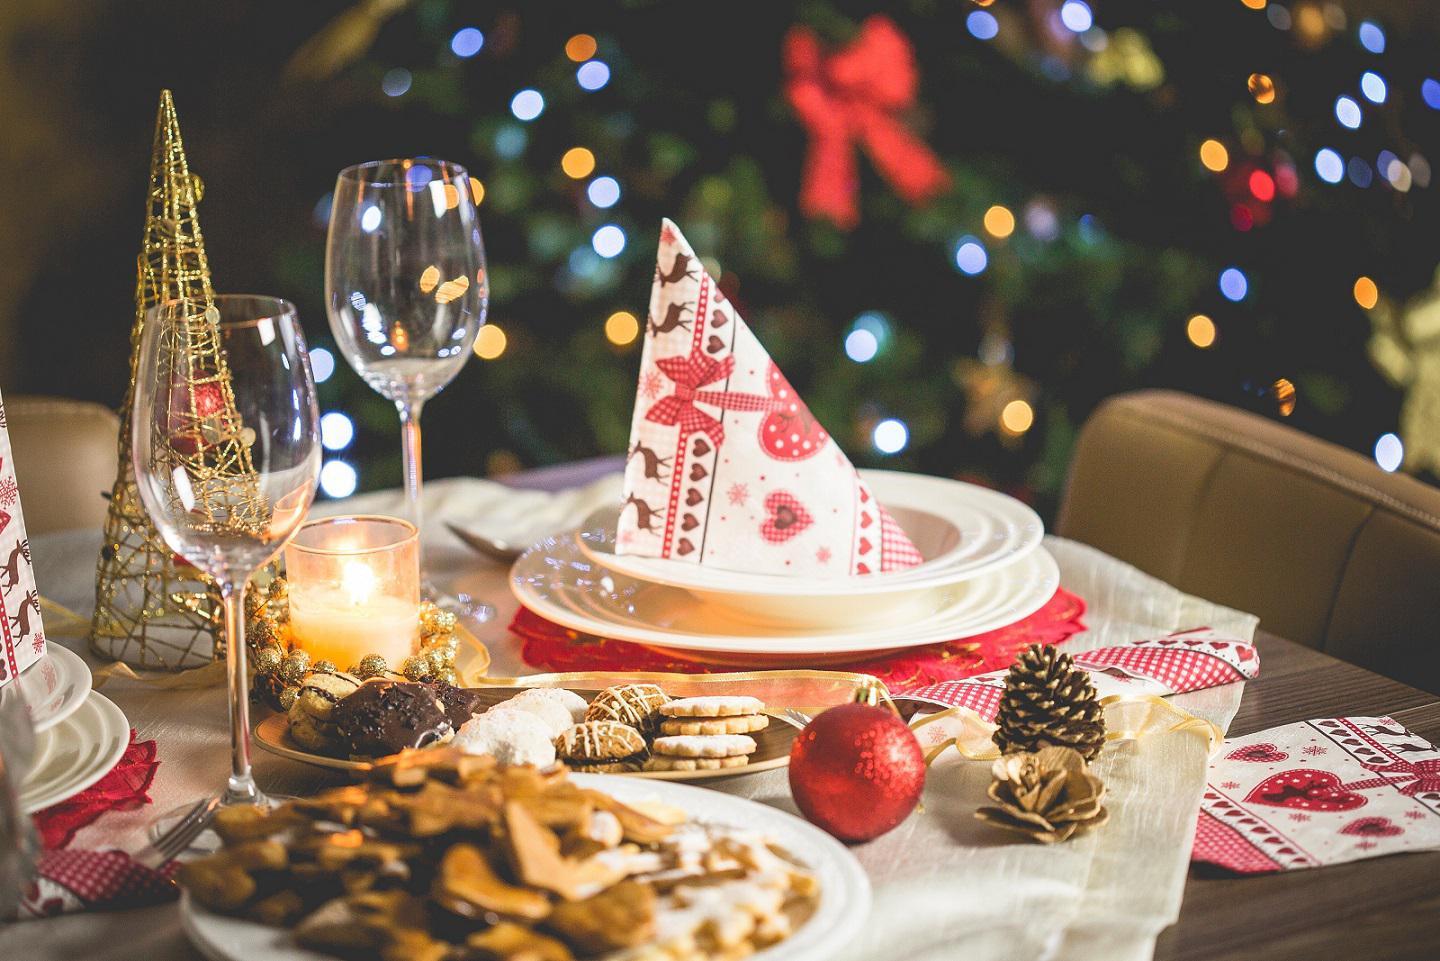 كيف يتم تحضير طاولة عيد الميلاد؟  كيف زينت الطاولة؟  فيما يلي بعض النصائح حول جداول العام الجديد